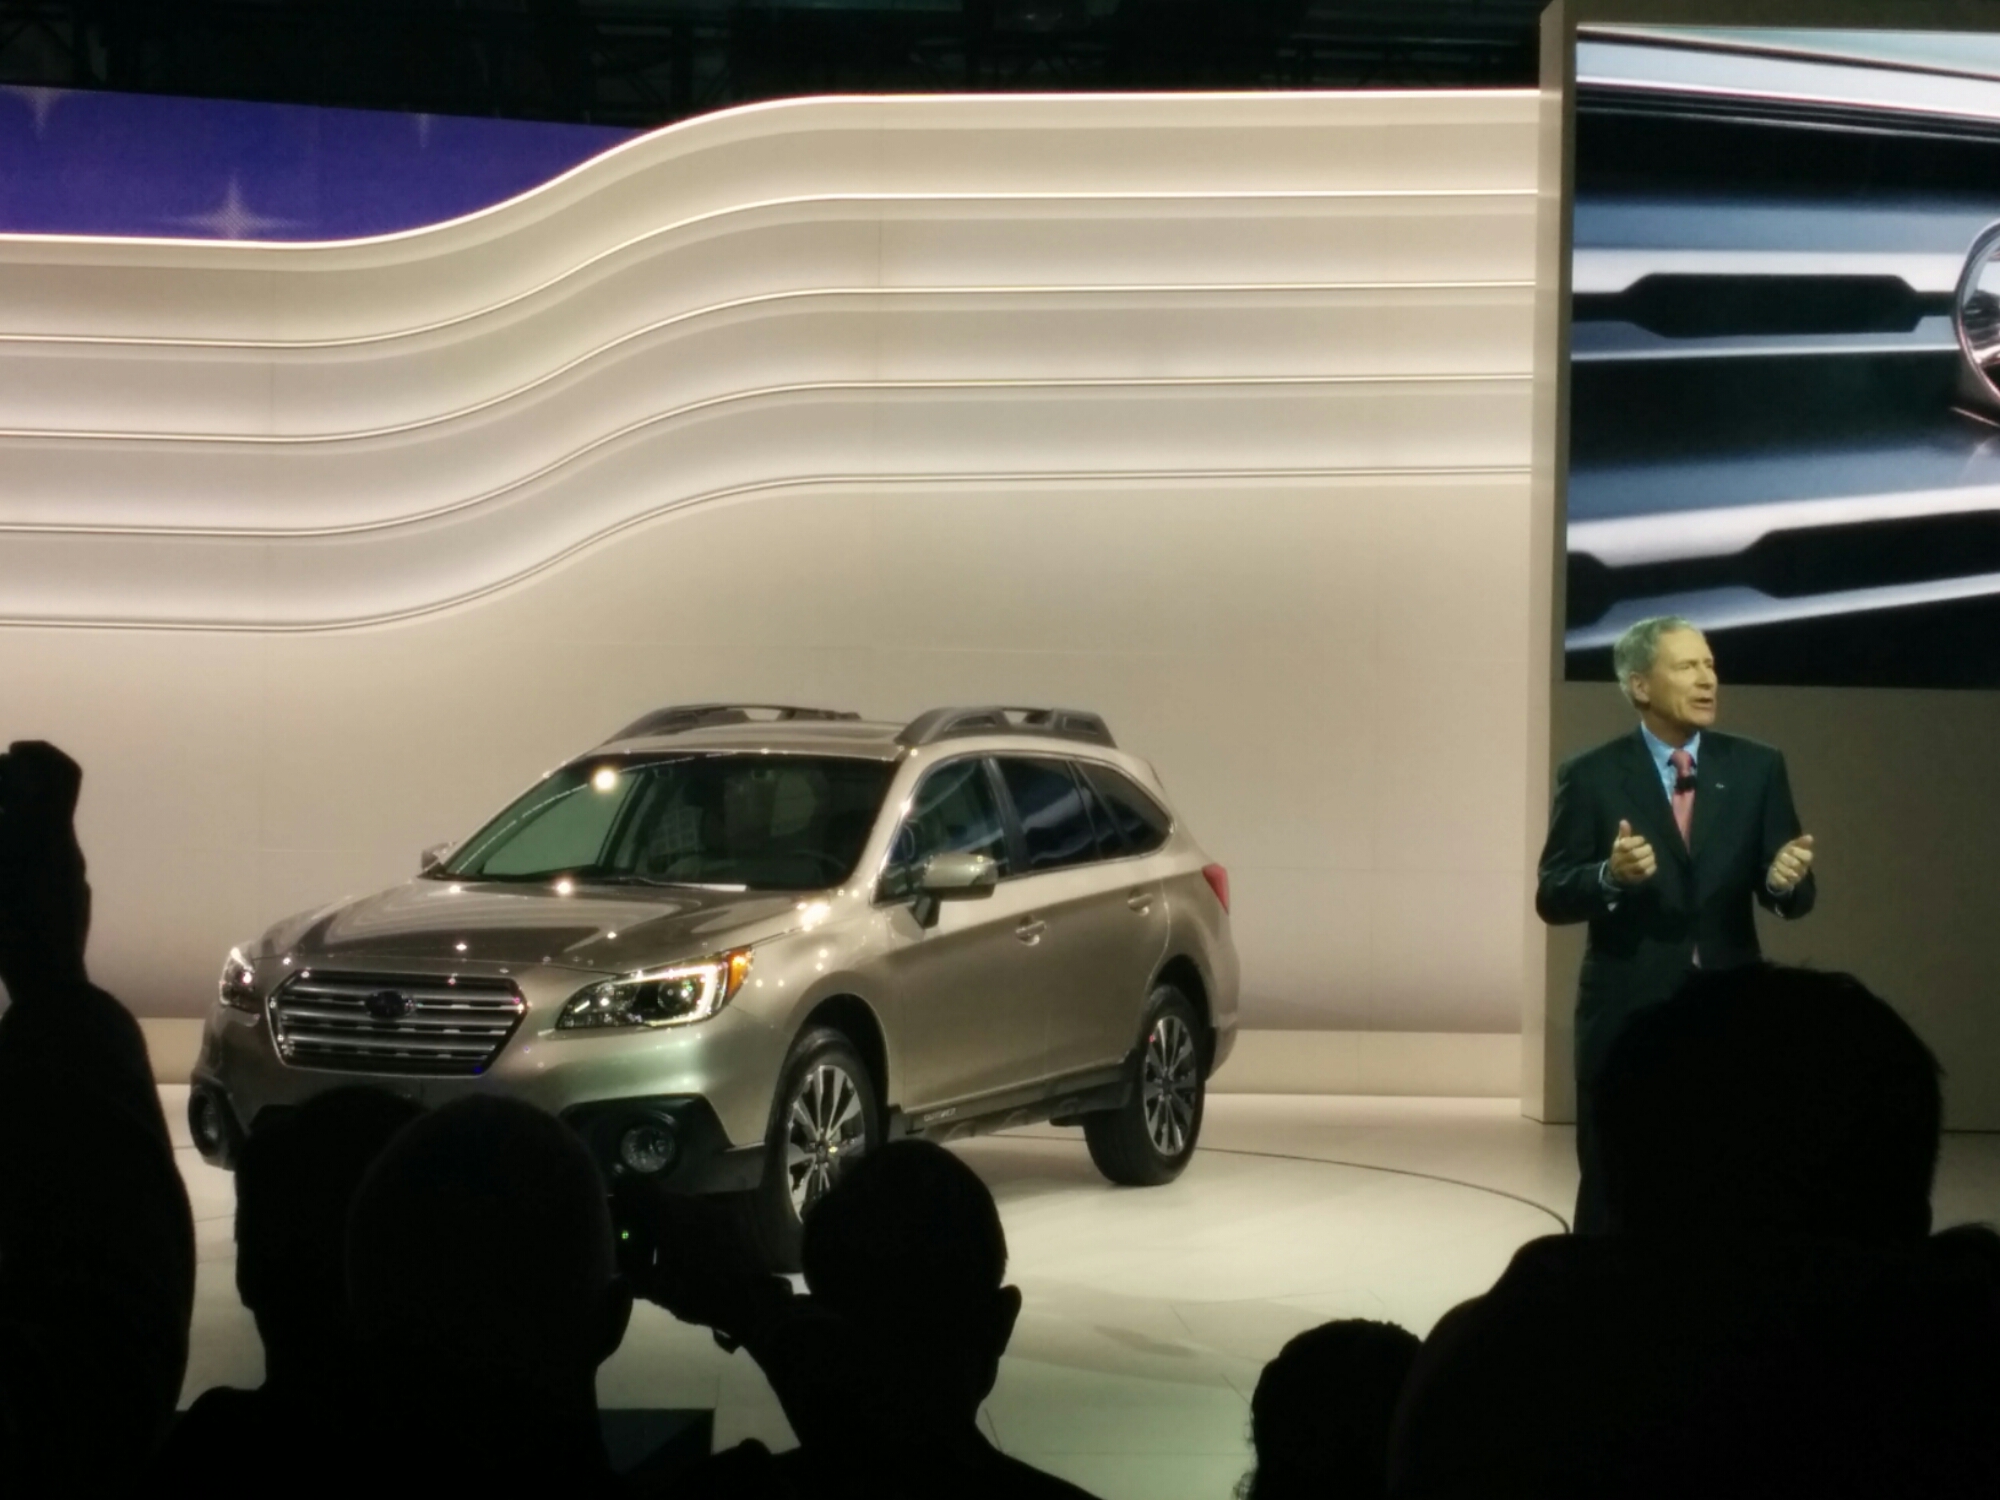 Subaru Press Conference Shifting Lanes